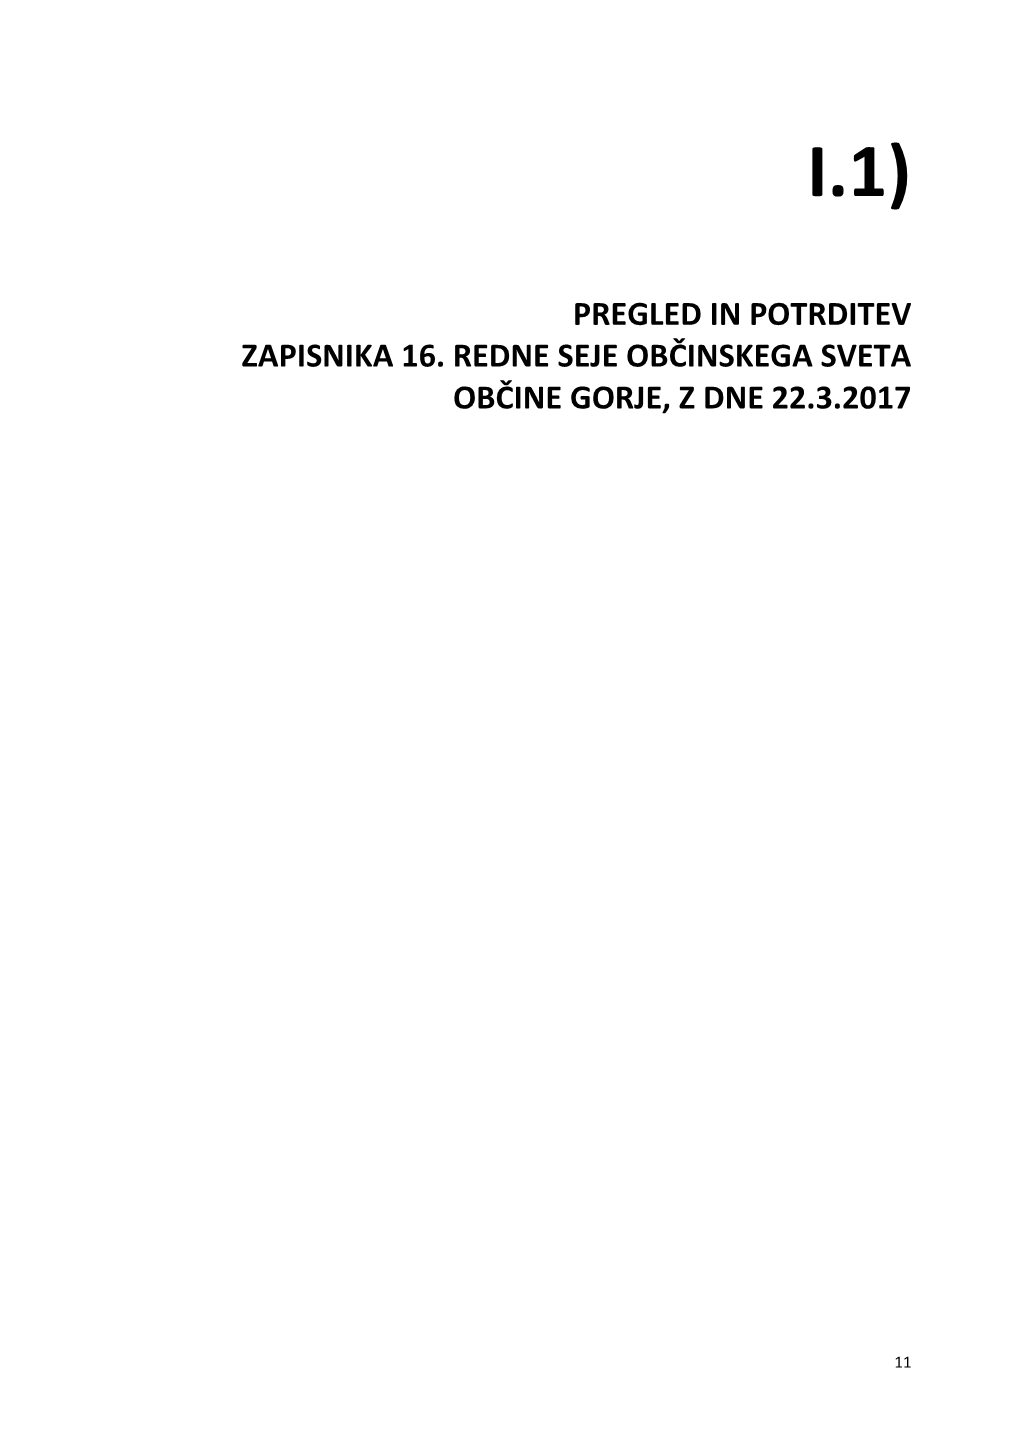 Pregled in Potrditev Zapisnika 16. Redne Seje Občinskega Sveta Občine Gorje, Z Dne 22.3.2017